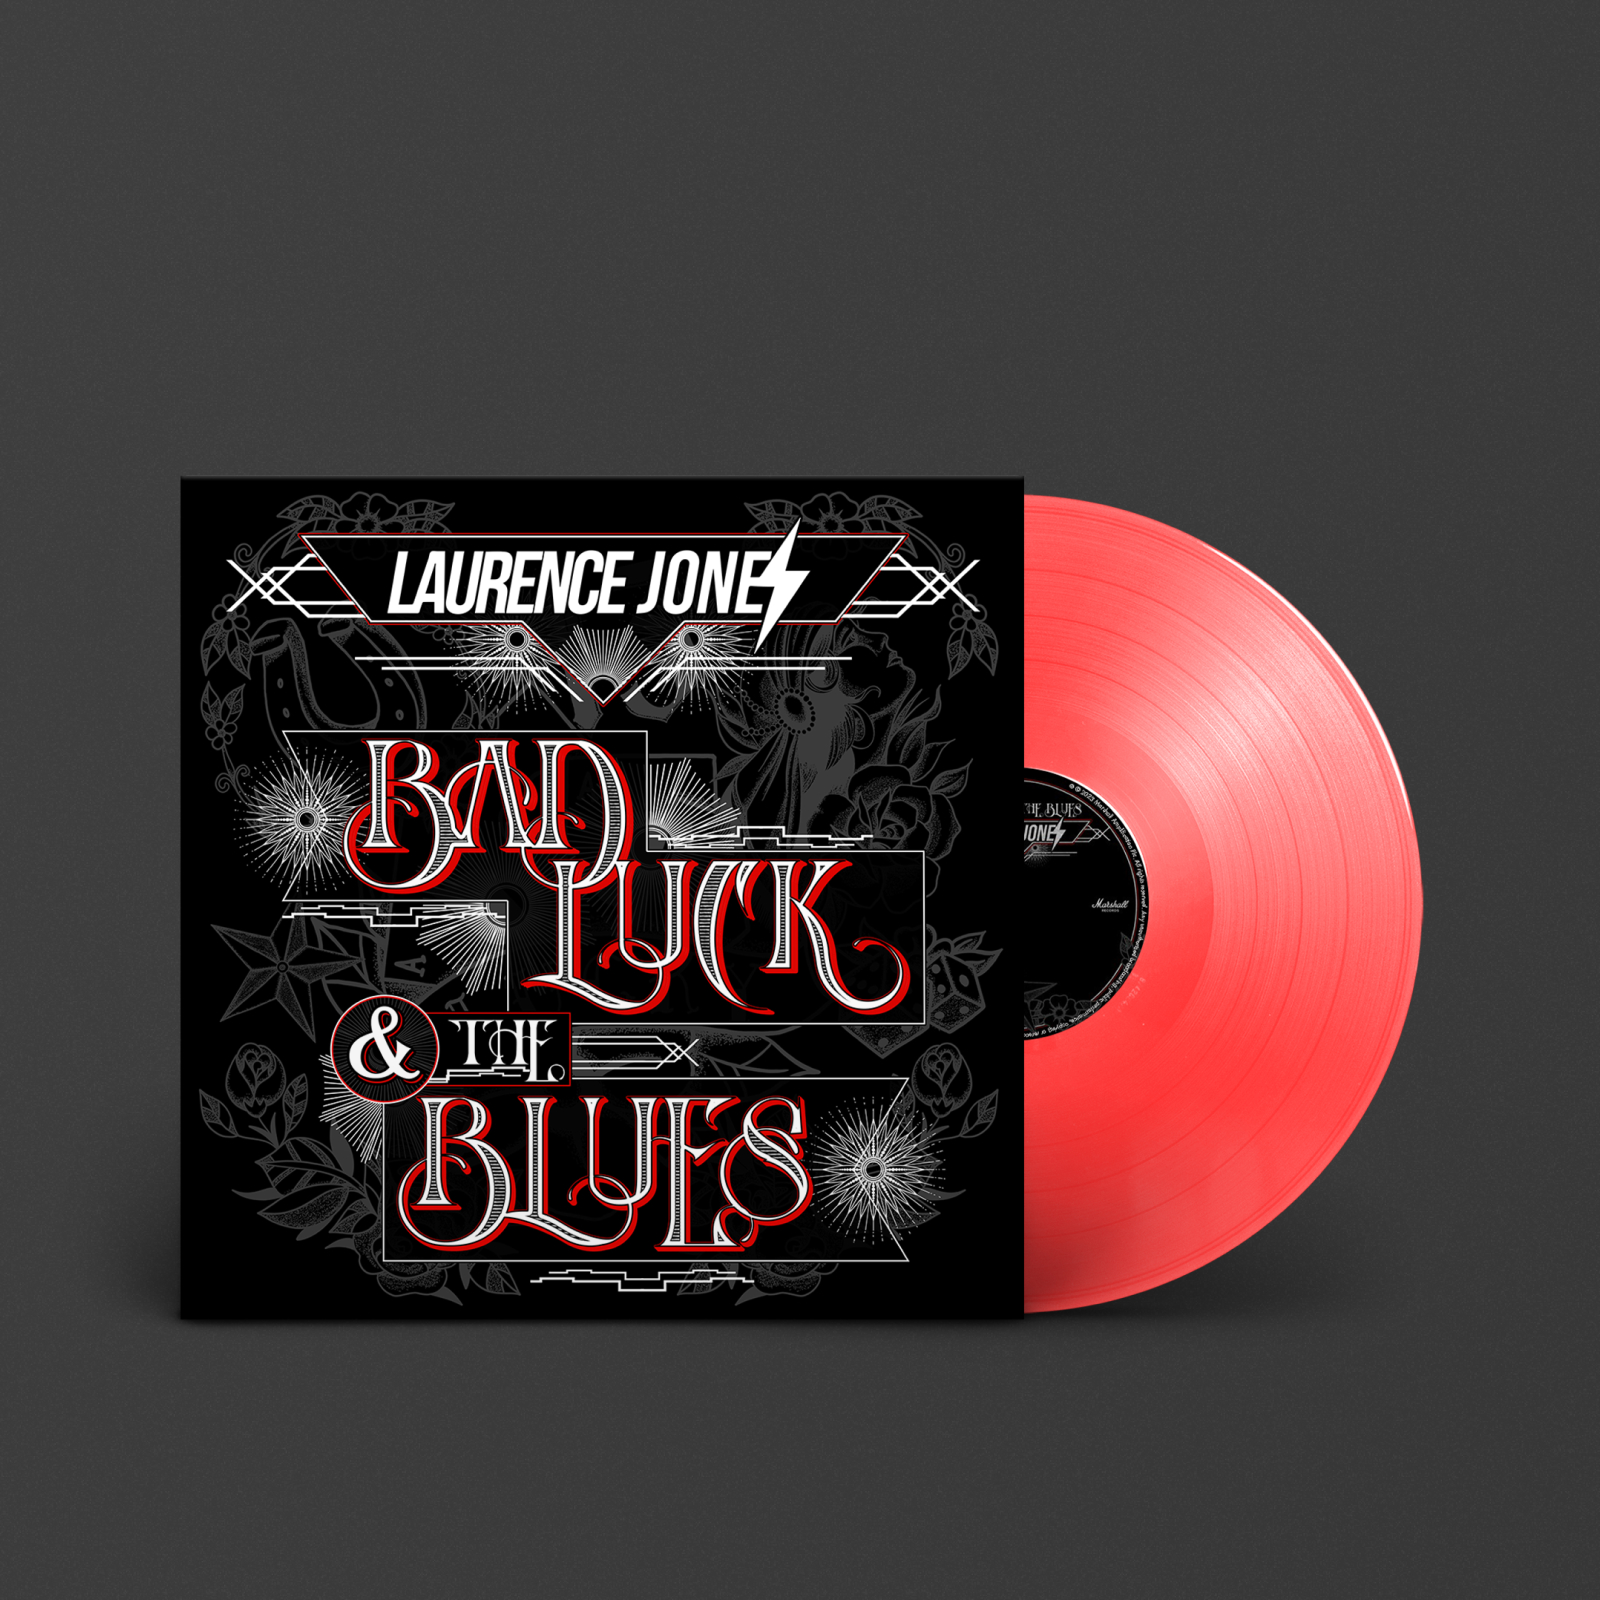 Rote Schallplatte 'Bad luck & the Blues' von 'Laurence Jones'.